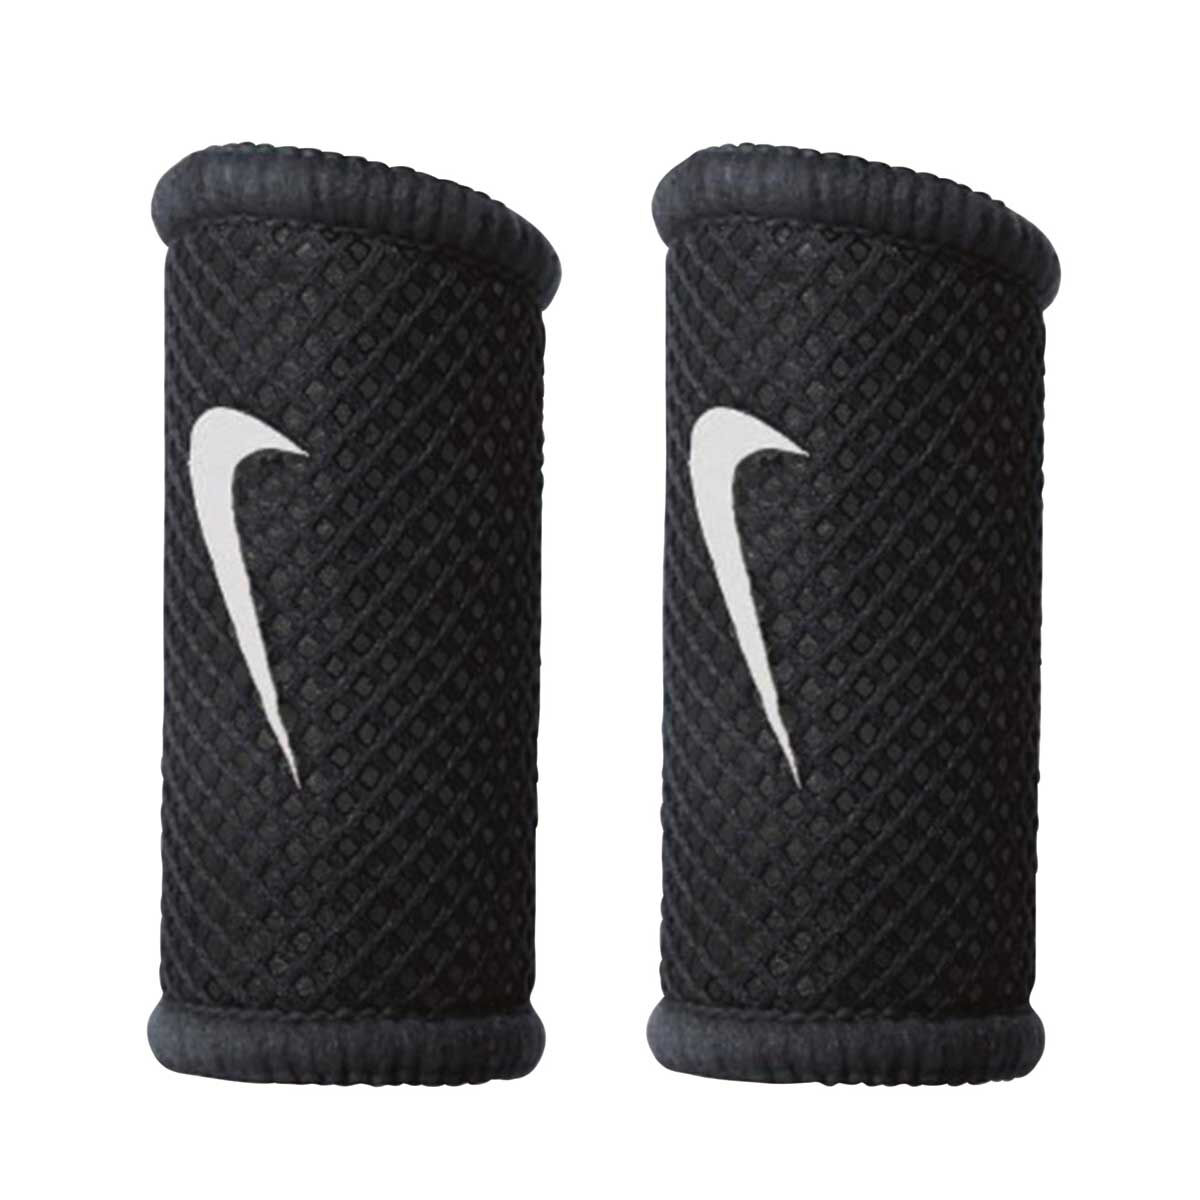 Nike Basketball Finger Sleeves Black 